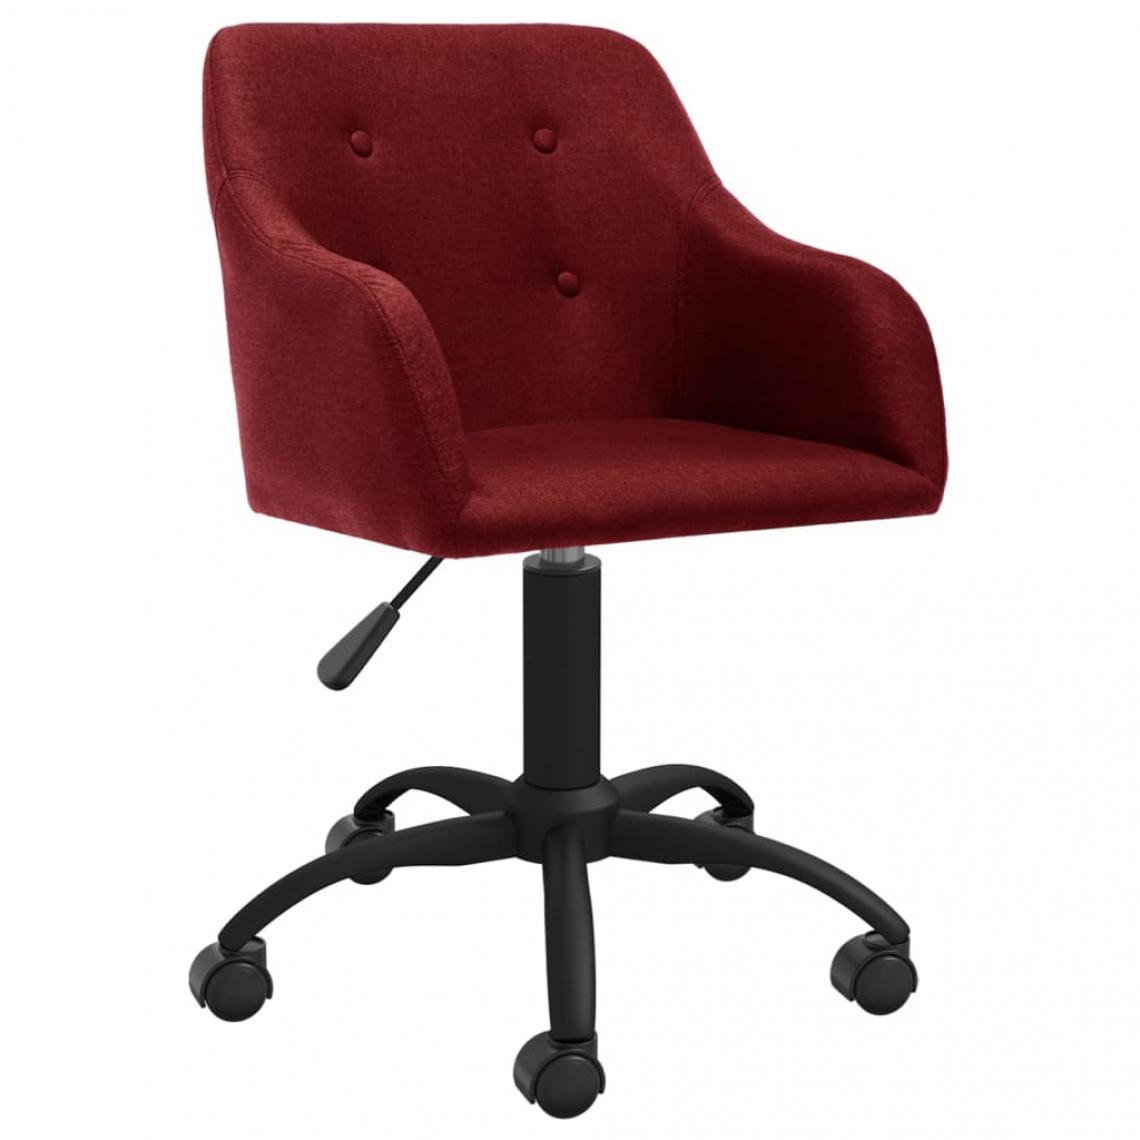 Vidaxl - vidaXL Chaise pivotante de bureau Rouge bordeaux Tissu - Bureaux